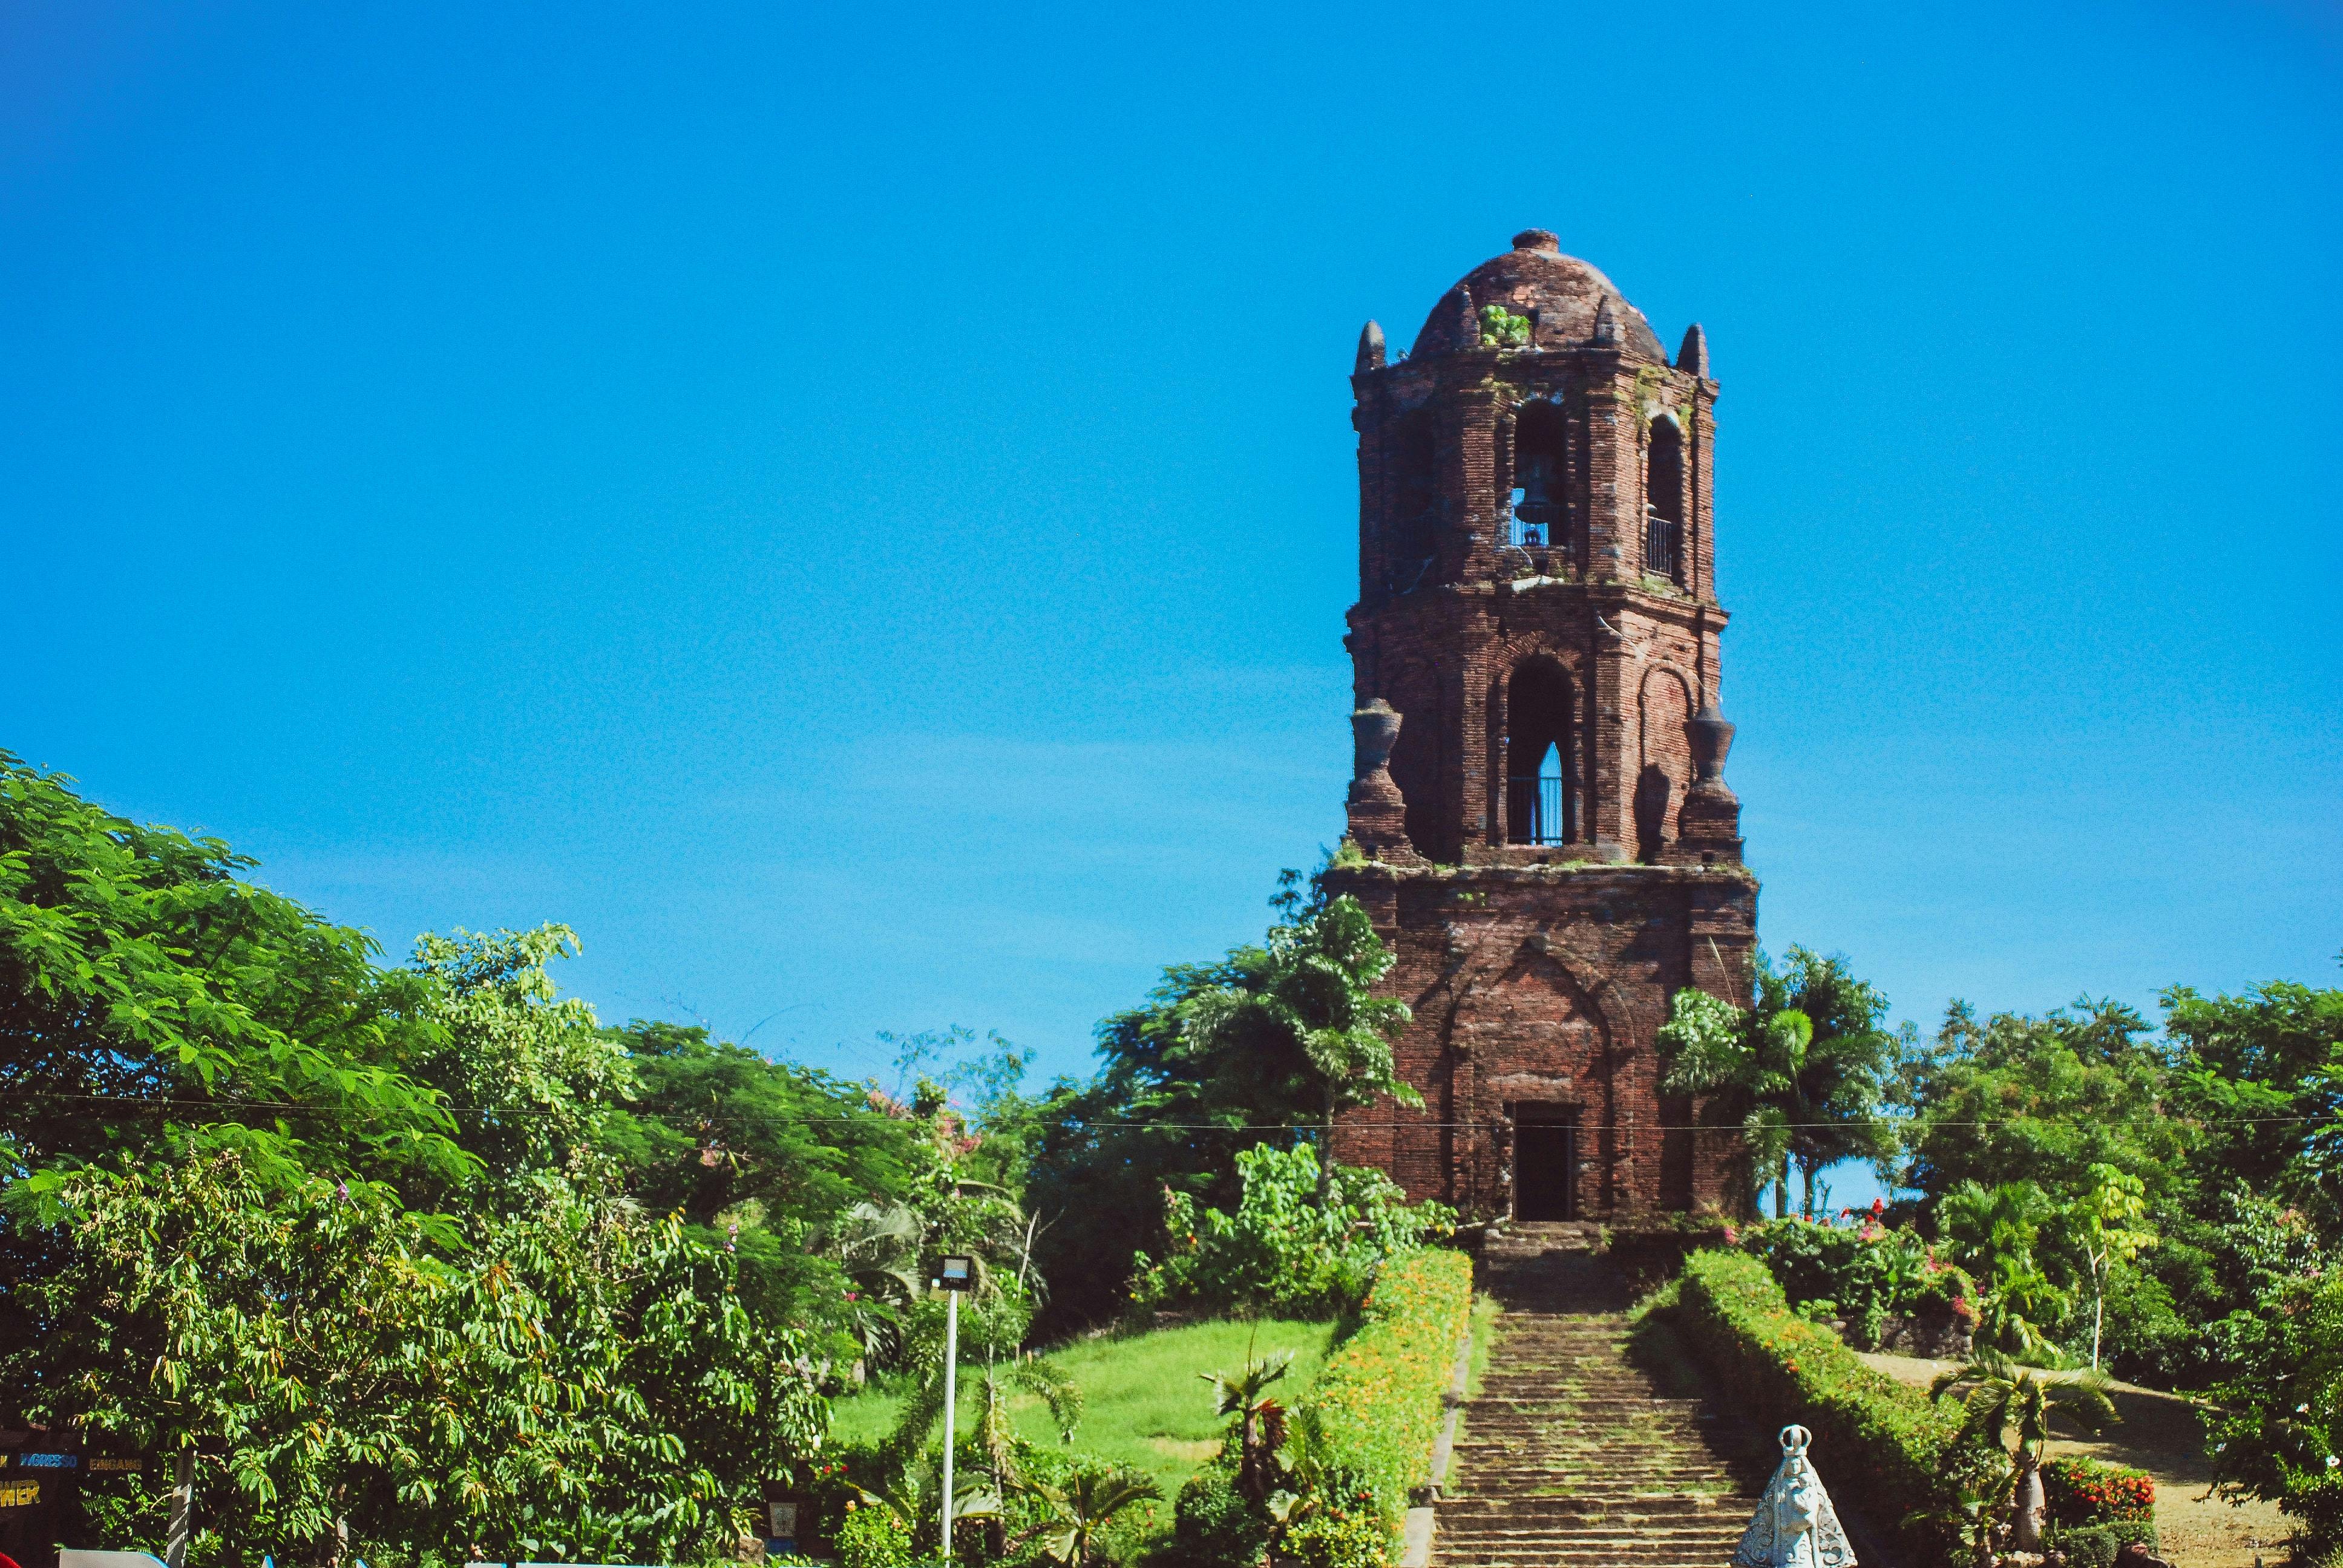 Bantay Watch Tower in Vigan Ilocos Sur